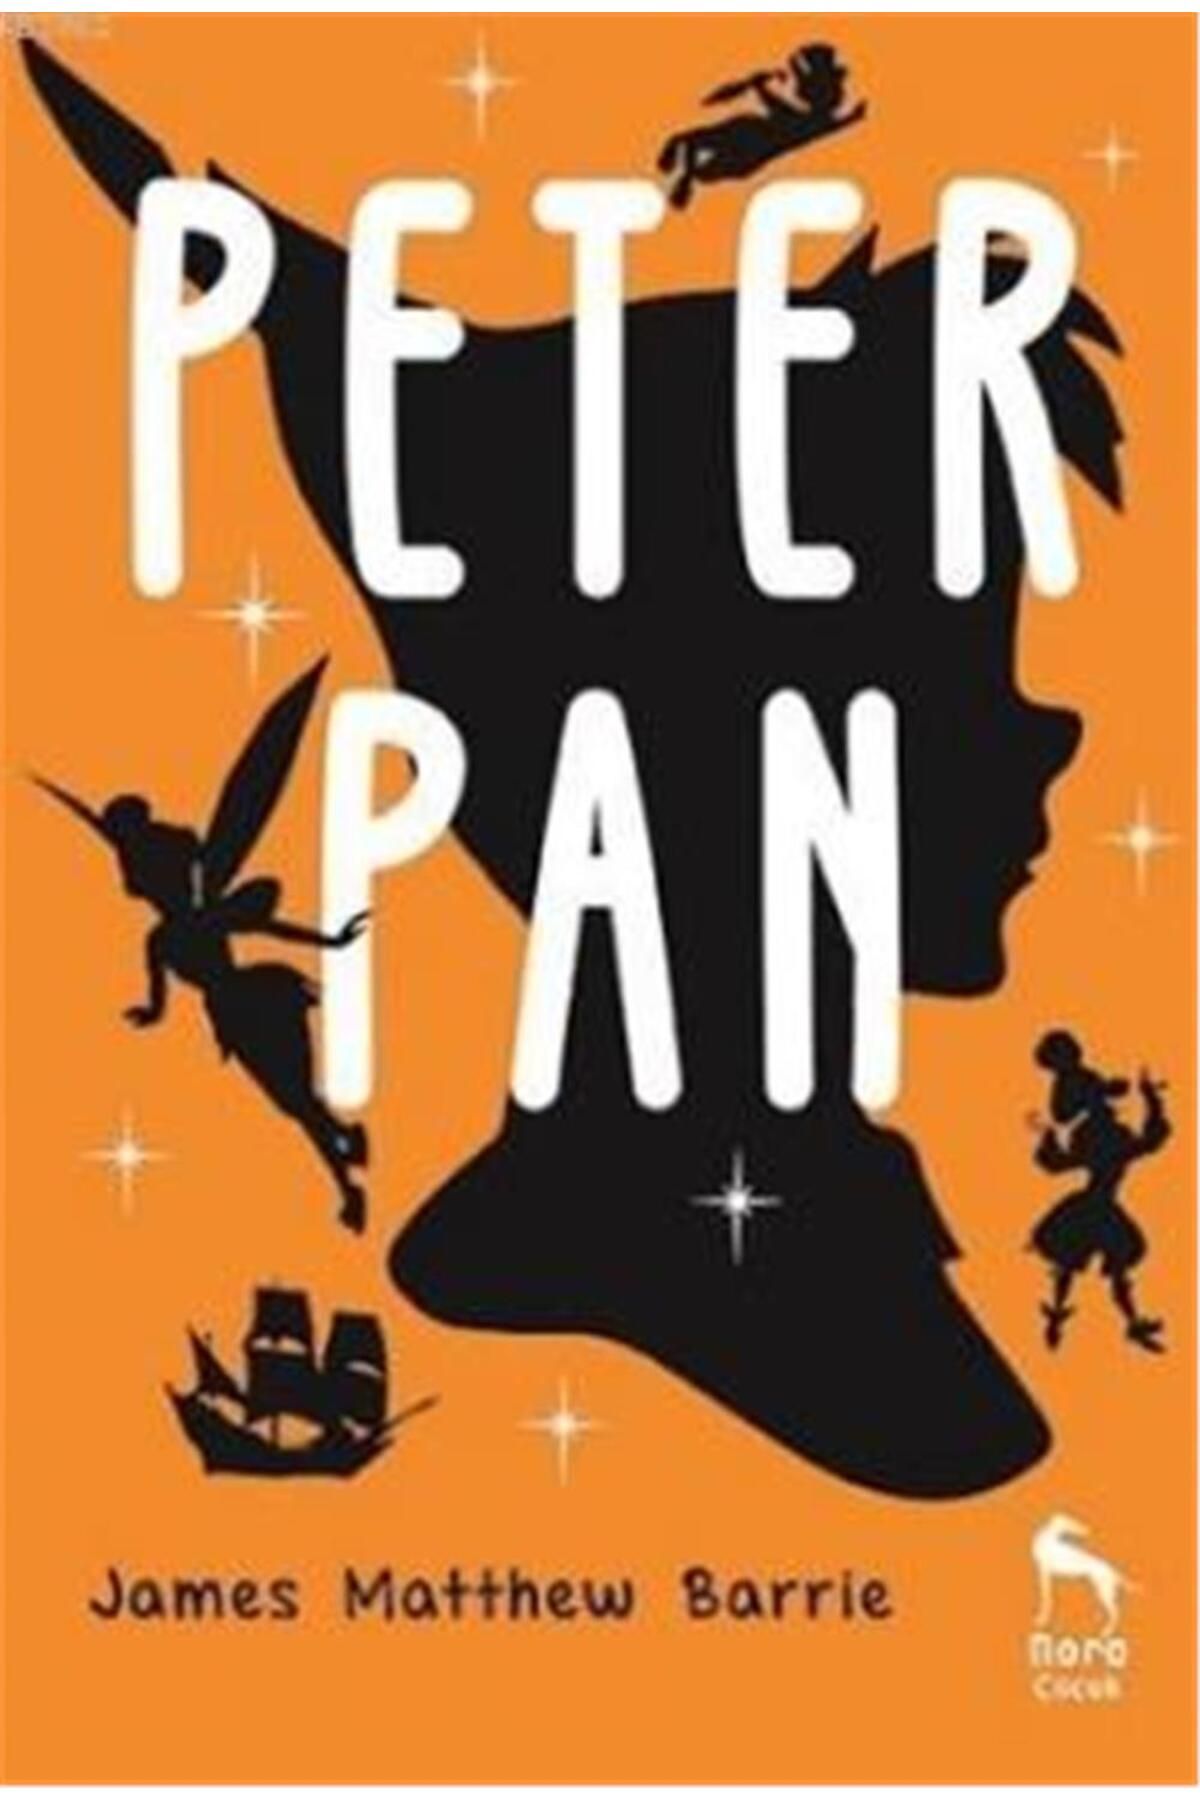 Nora Kitap Peter Pan